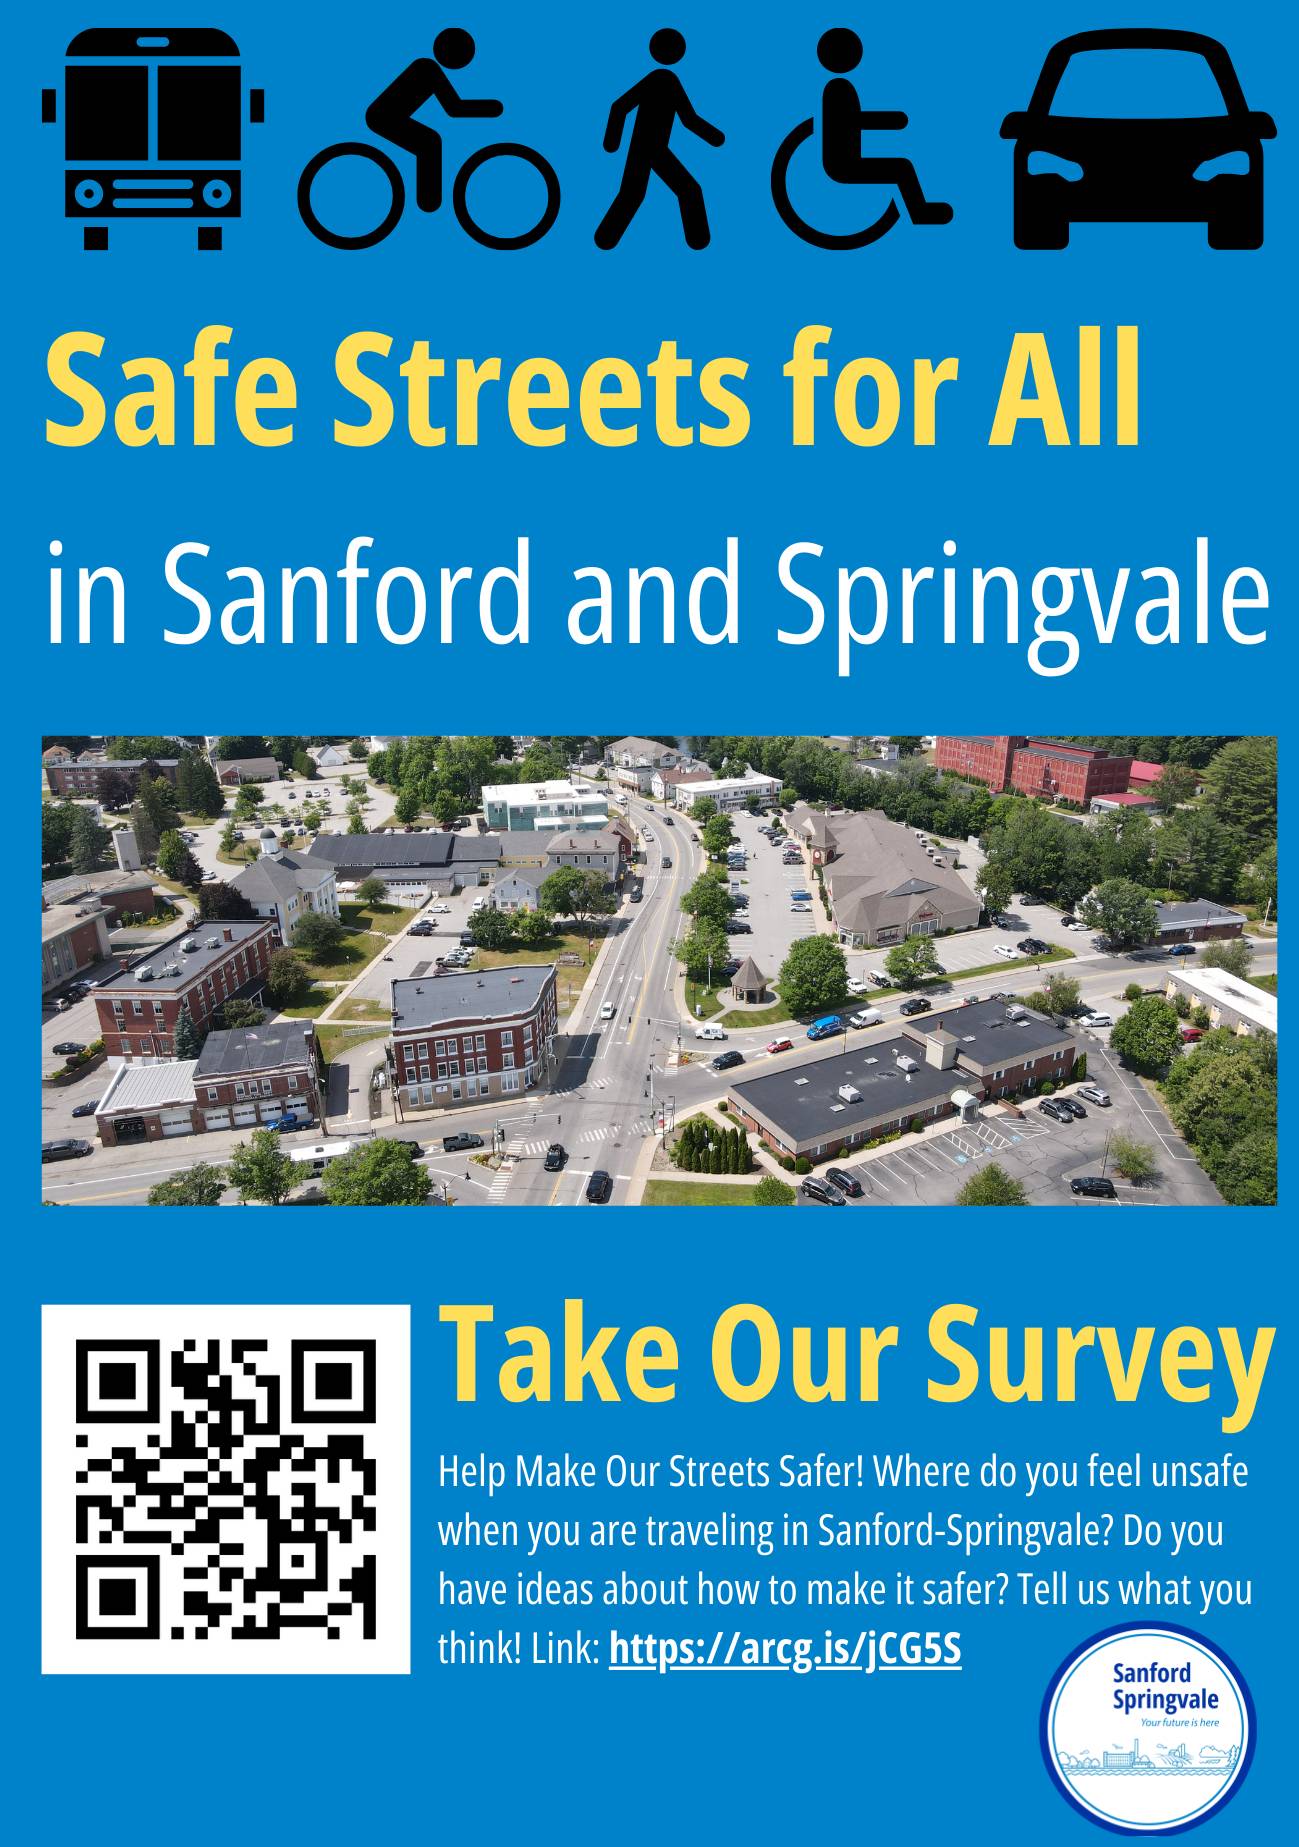 SS4A Community Survey Poster - Copy